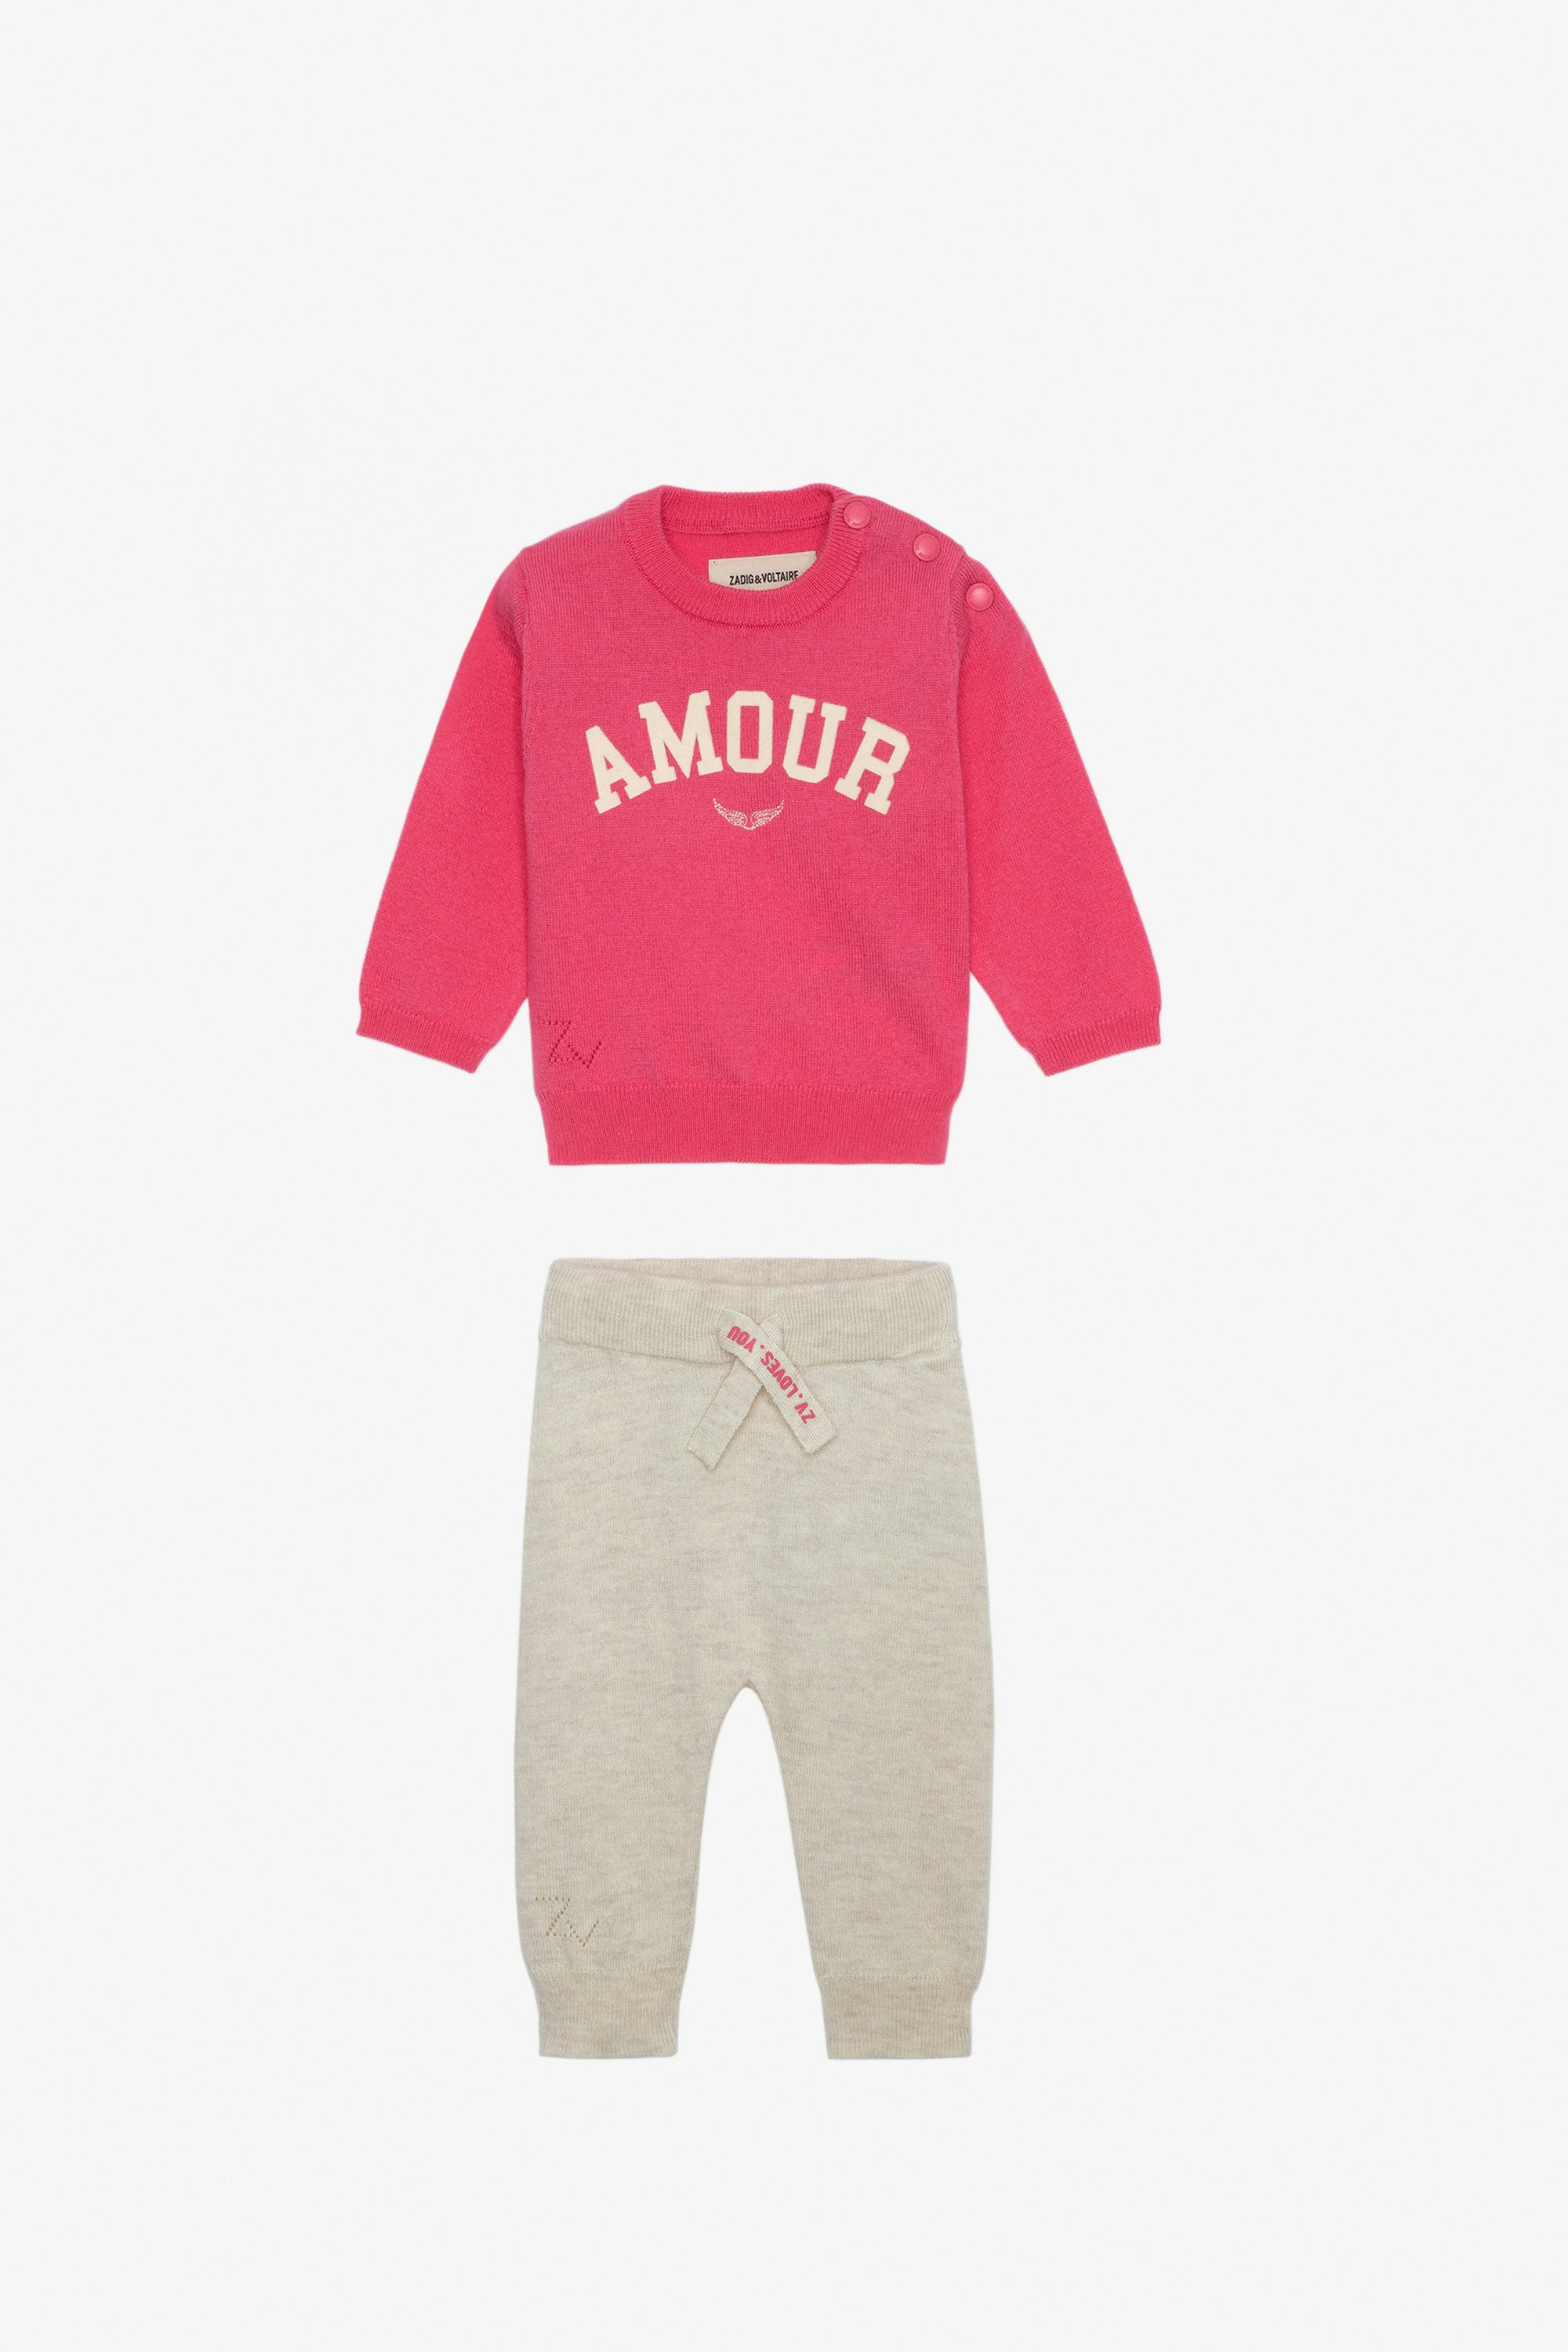 Set Pona für Babys - Set bestehend aus einem Pullover mit der Aufschrift „Amour“ und Hose aus Strick in Babyrosa.